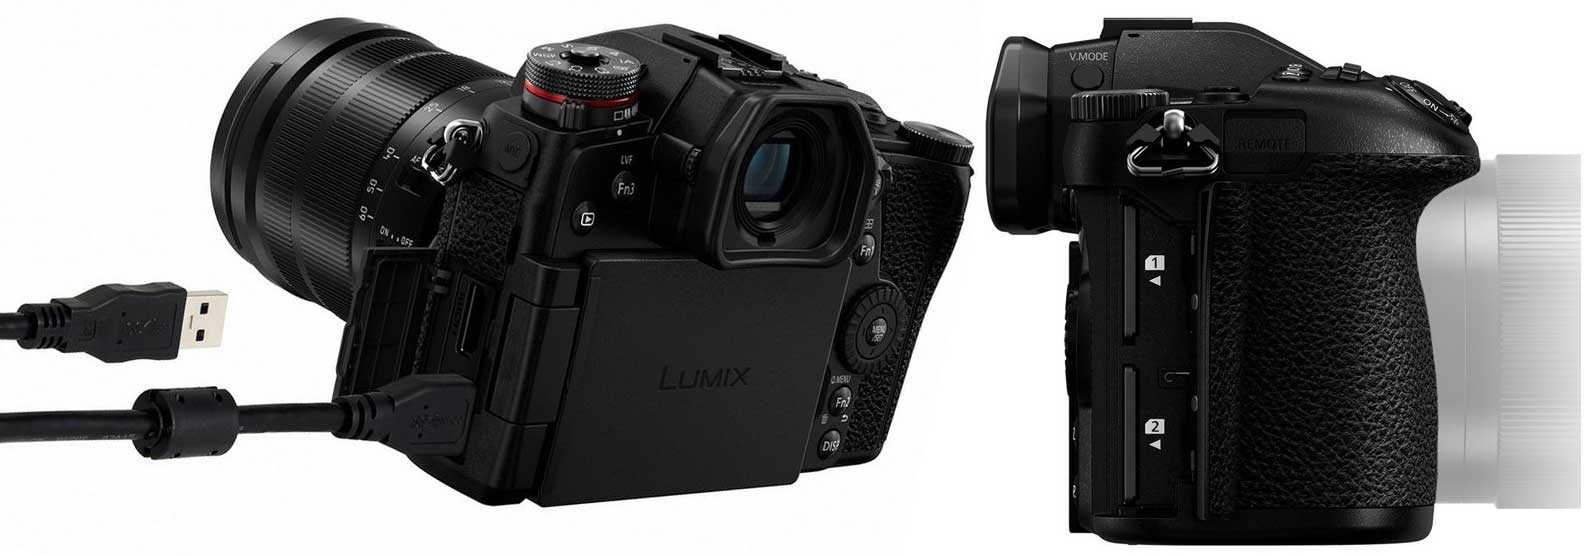 Лучший фотоаппарат микро 4/3 panasonic lumix g9